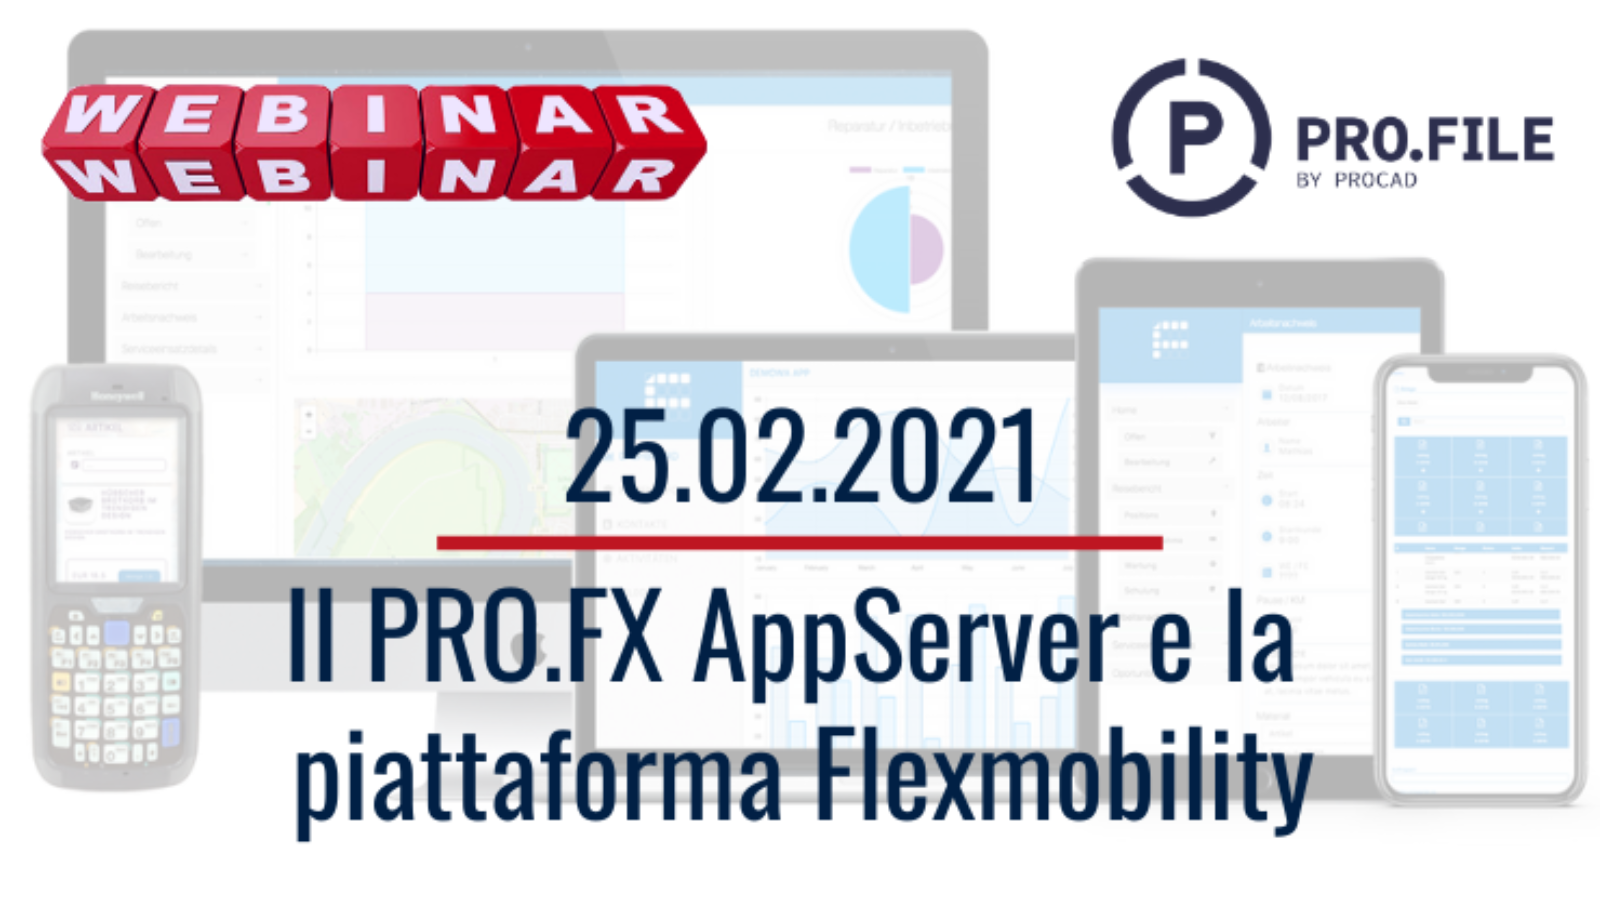 PRO.FX AppServer e Flexmobility